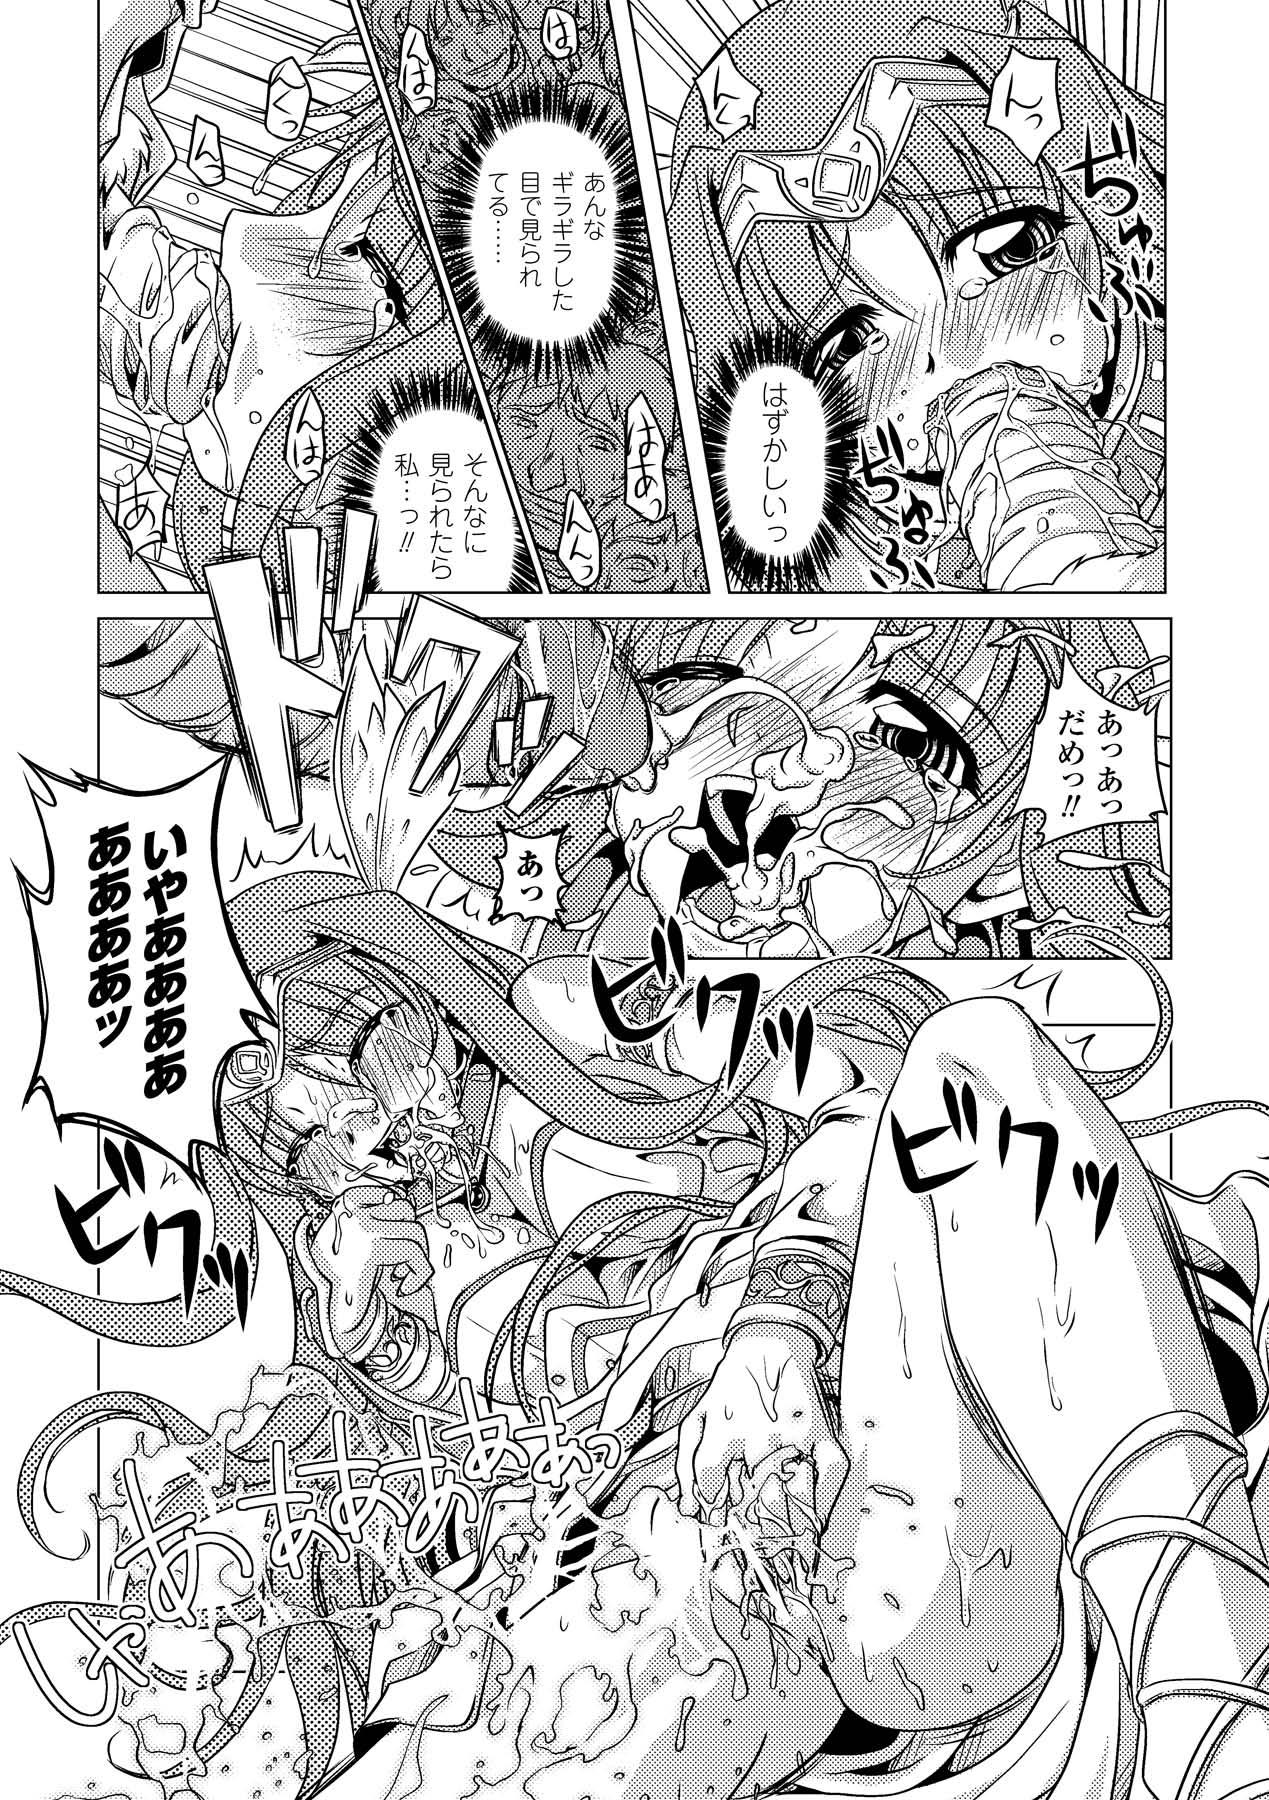 Toilet Zetsumetsu Kigu Megami - Suisei tenshi prima veil zwei Ass Fucking - Page 13